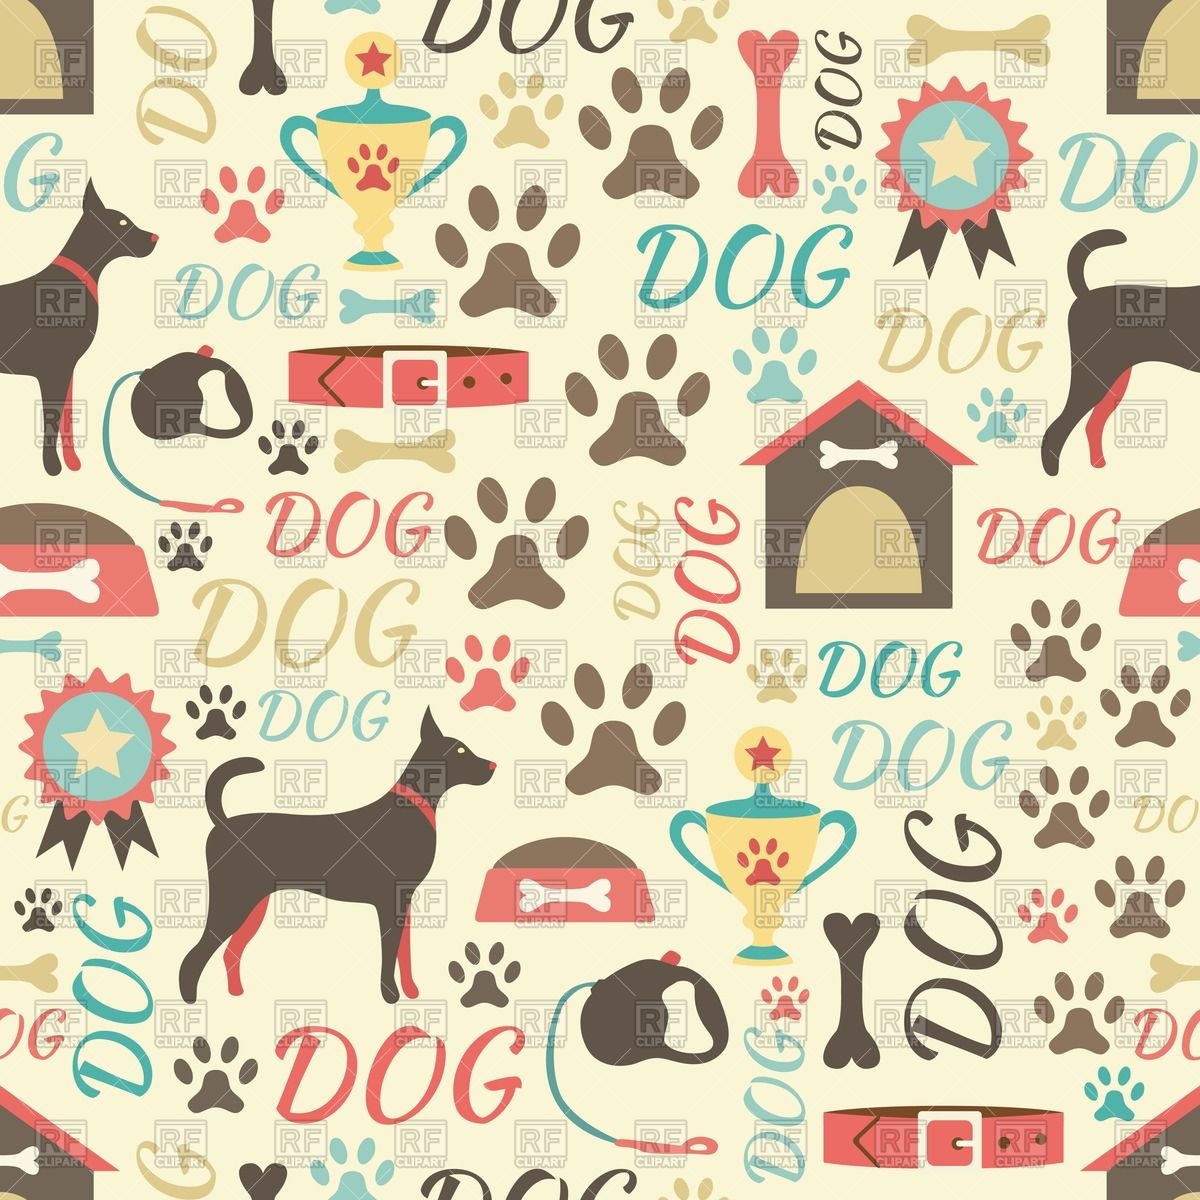 [40+] Dog Print Wallpaper | WallpaperSafari.com